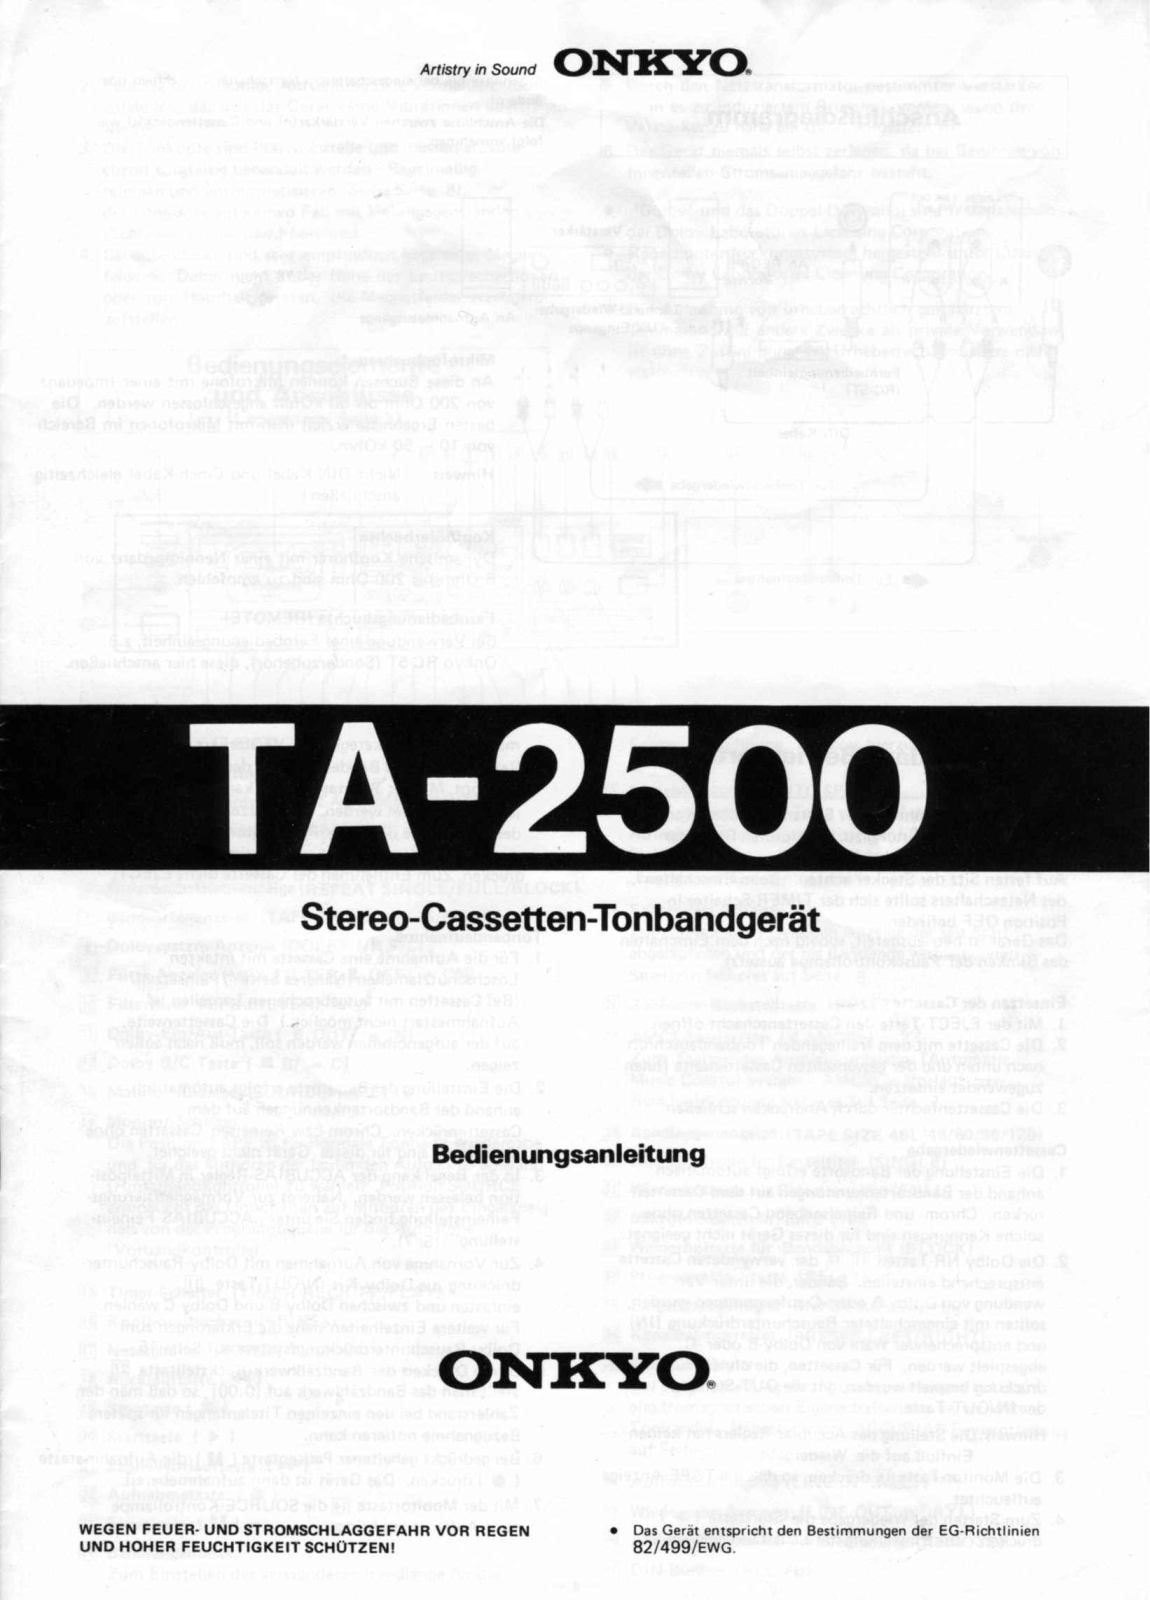 Onkyo TA-2500 Owners Manual